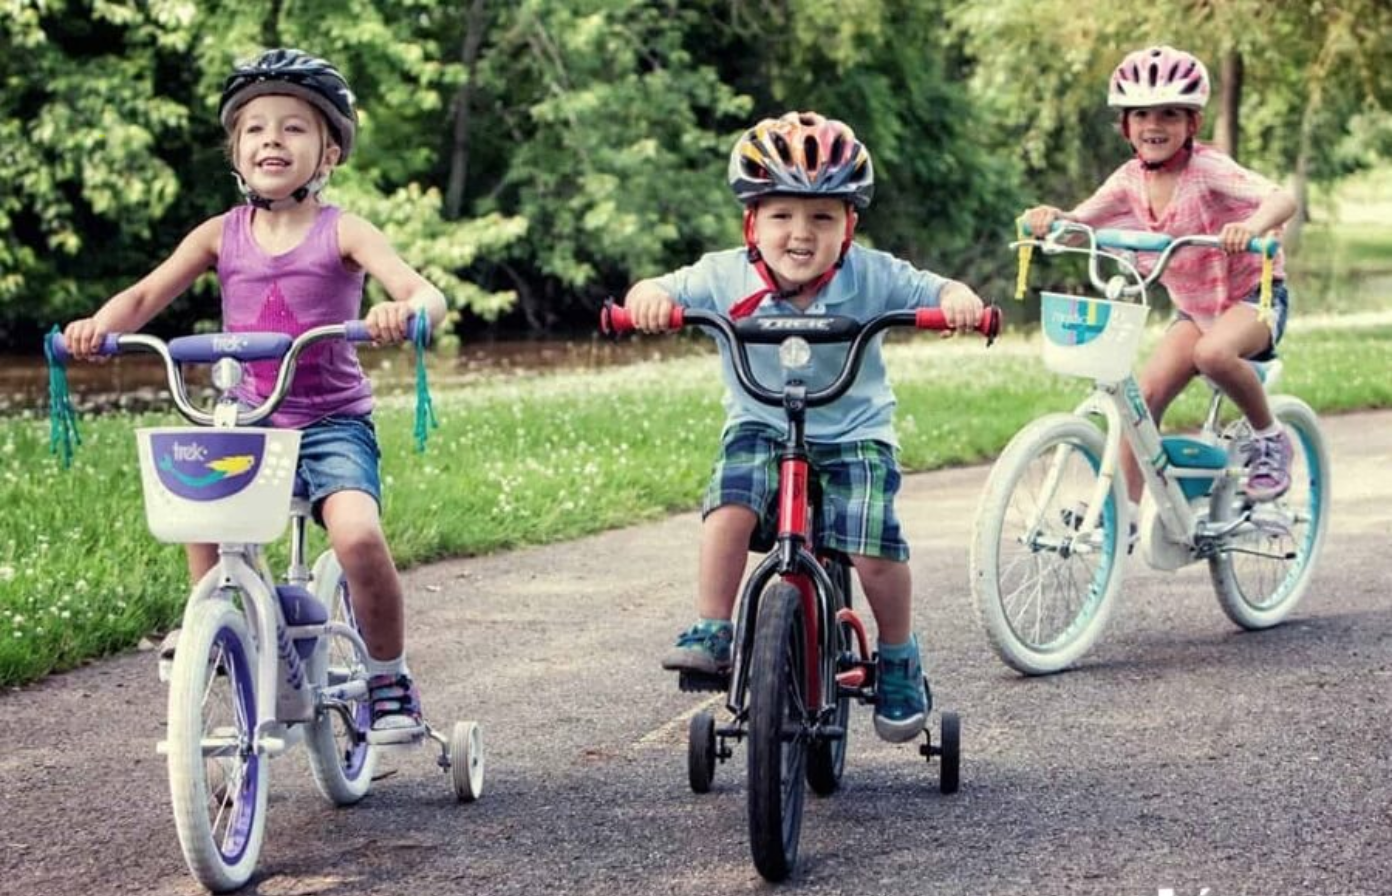 Để các bé không cảm thấy nhàm chán trong việc vận động, trò chơi kết hợp xe đạp trẻ em là một giải pháp tuyệt vời. Chơi cùng bạn bè trên chiếc xe đạp và tận hưởng cuộc sống ngoài trời là cách tuyệt vời để giữ cho các bé vui vẻ và khỏe mạnh. Cùng ngắm những trò chơi kết hợp xe đạp trẻ em đầy thú vị và bổ ích nhé!